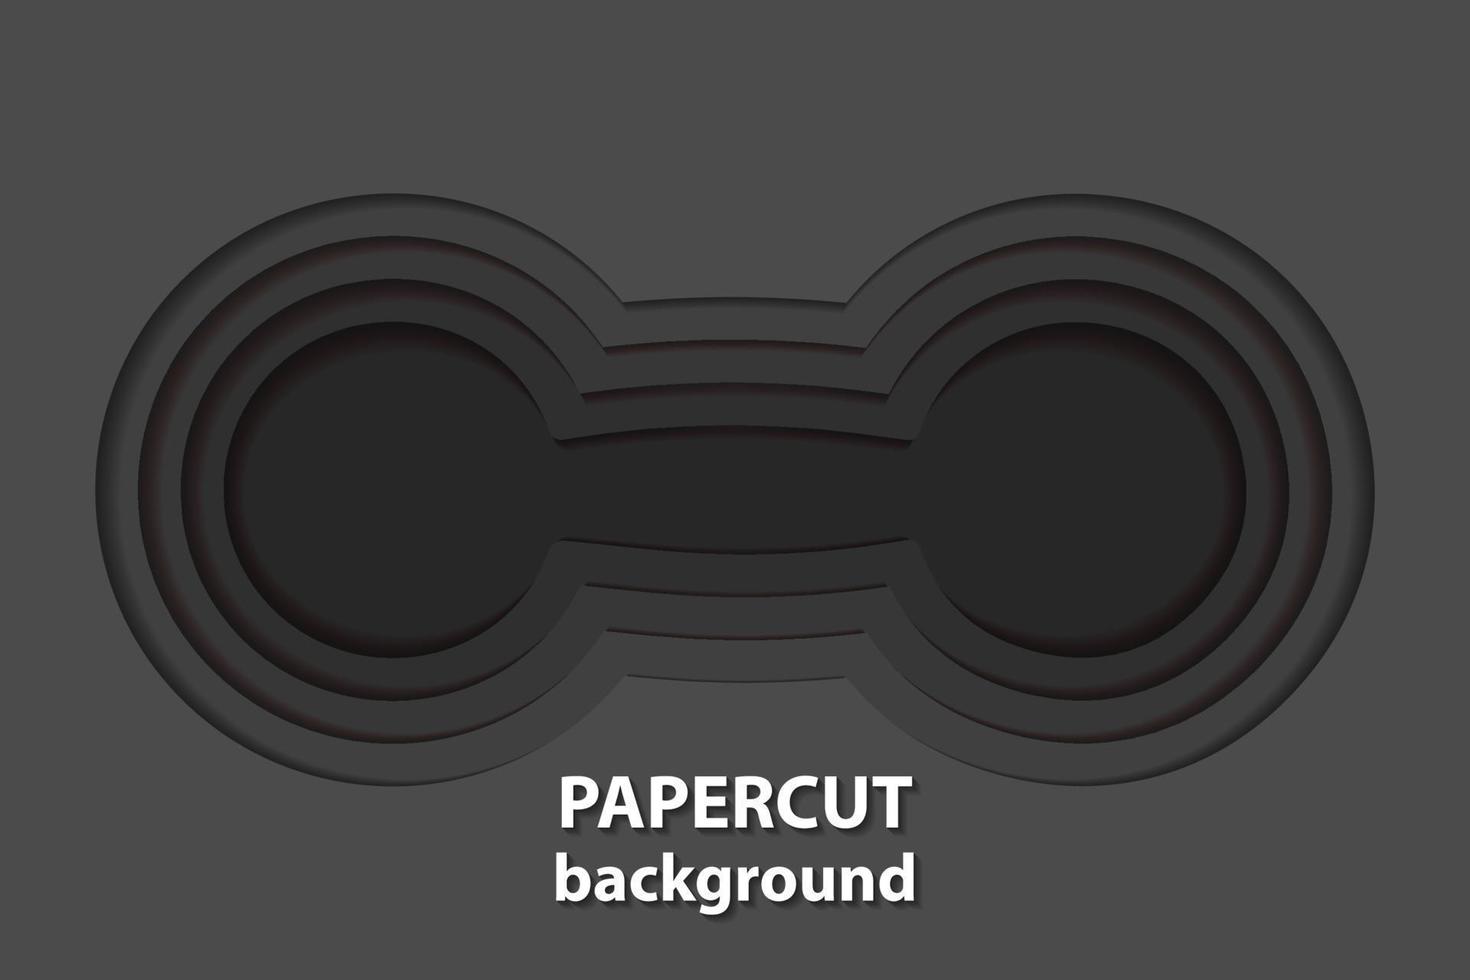 vektor bakgrund med svart papper skära former. 3d abstrakt papper konst stil, design layout för företag presentationer, flygblad, affischer, grafik, dekoration, kort, broschyr omslag.